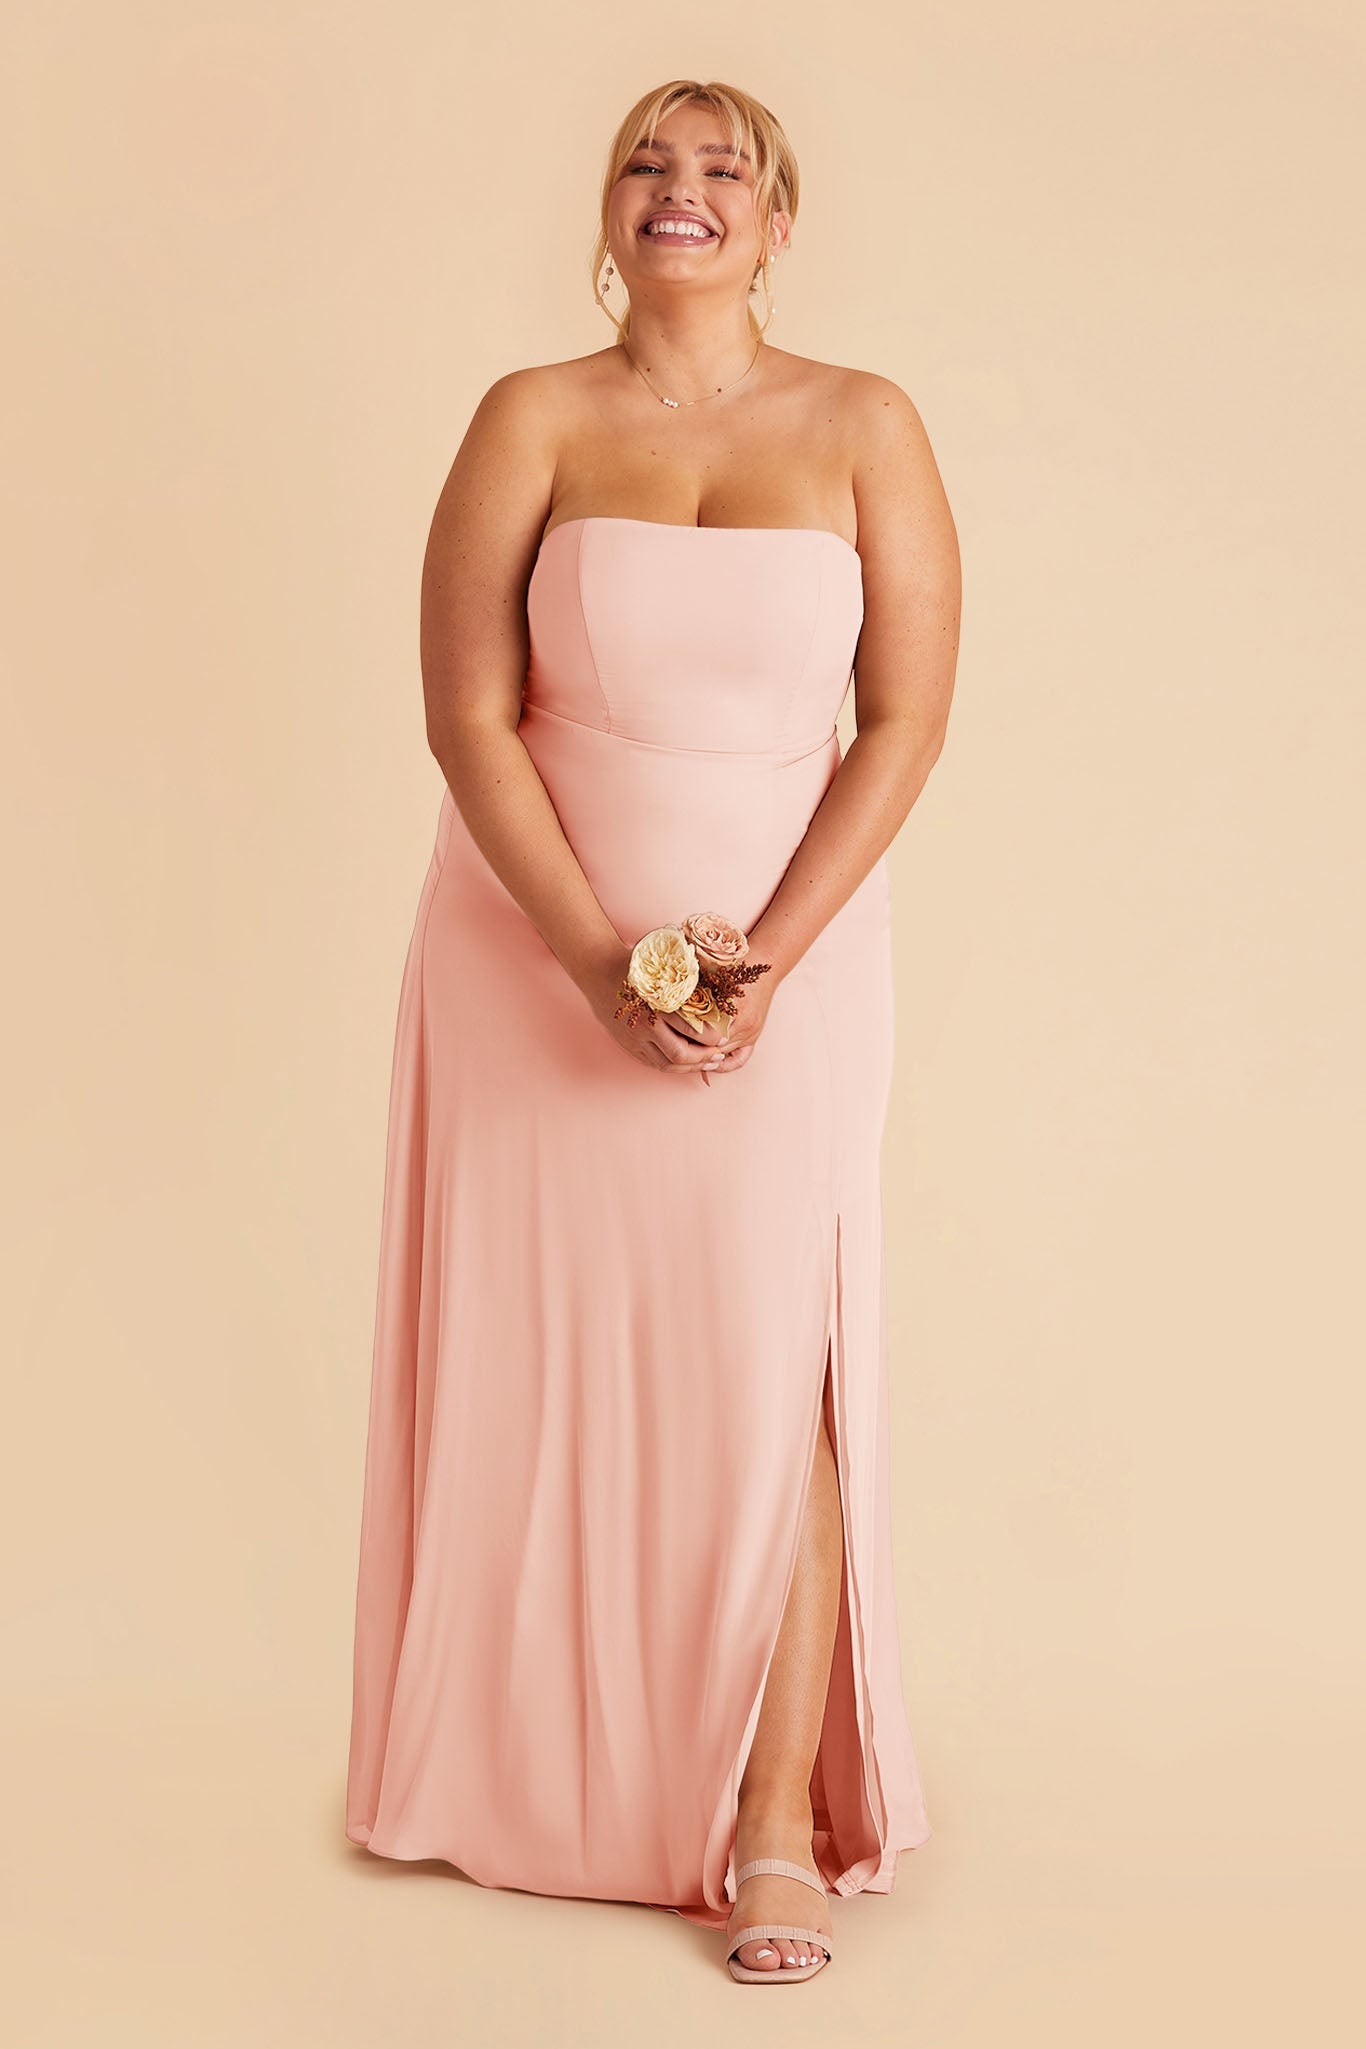 Blush Pink Chris Convertible Chiffon Dress by Birdy Grey